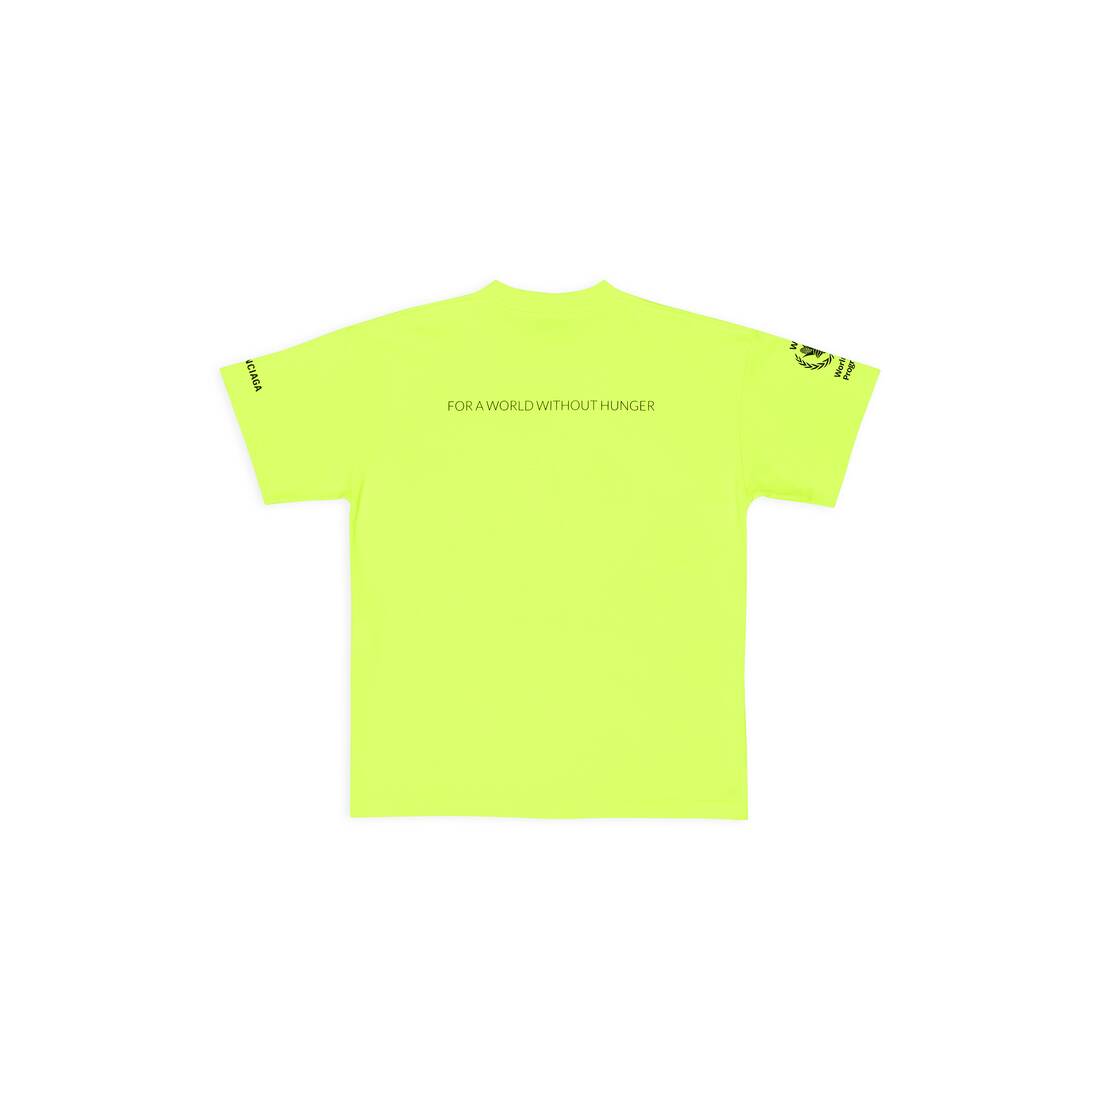 ネオンイエロー の ウィメンズ Wfp Tシャツ Medium Fit | Balenciaga JP